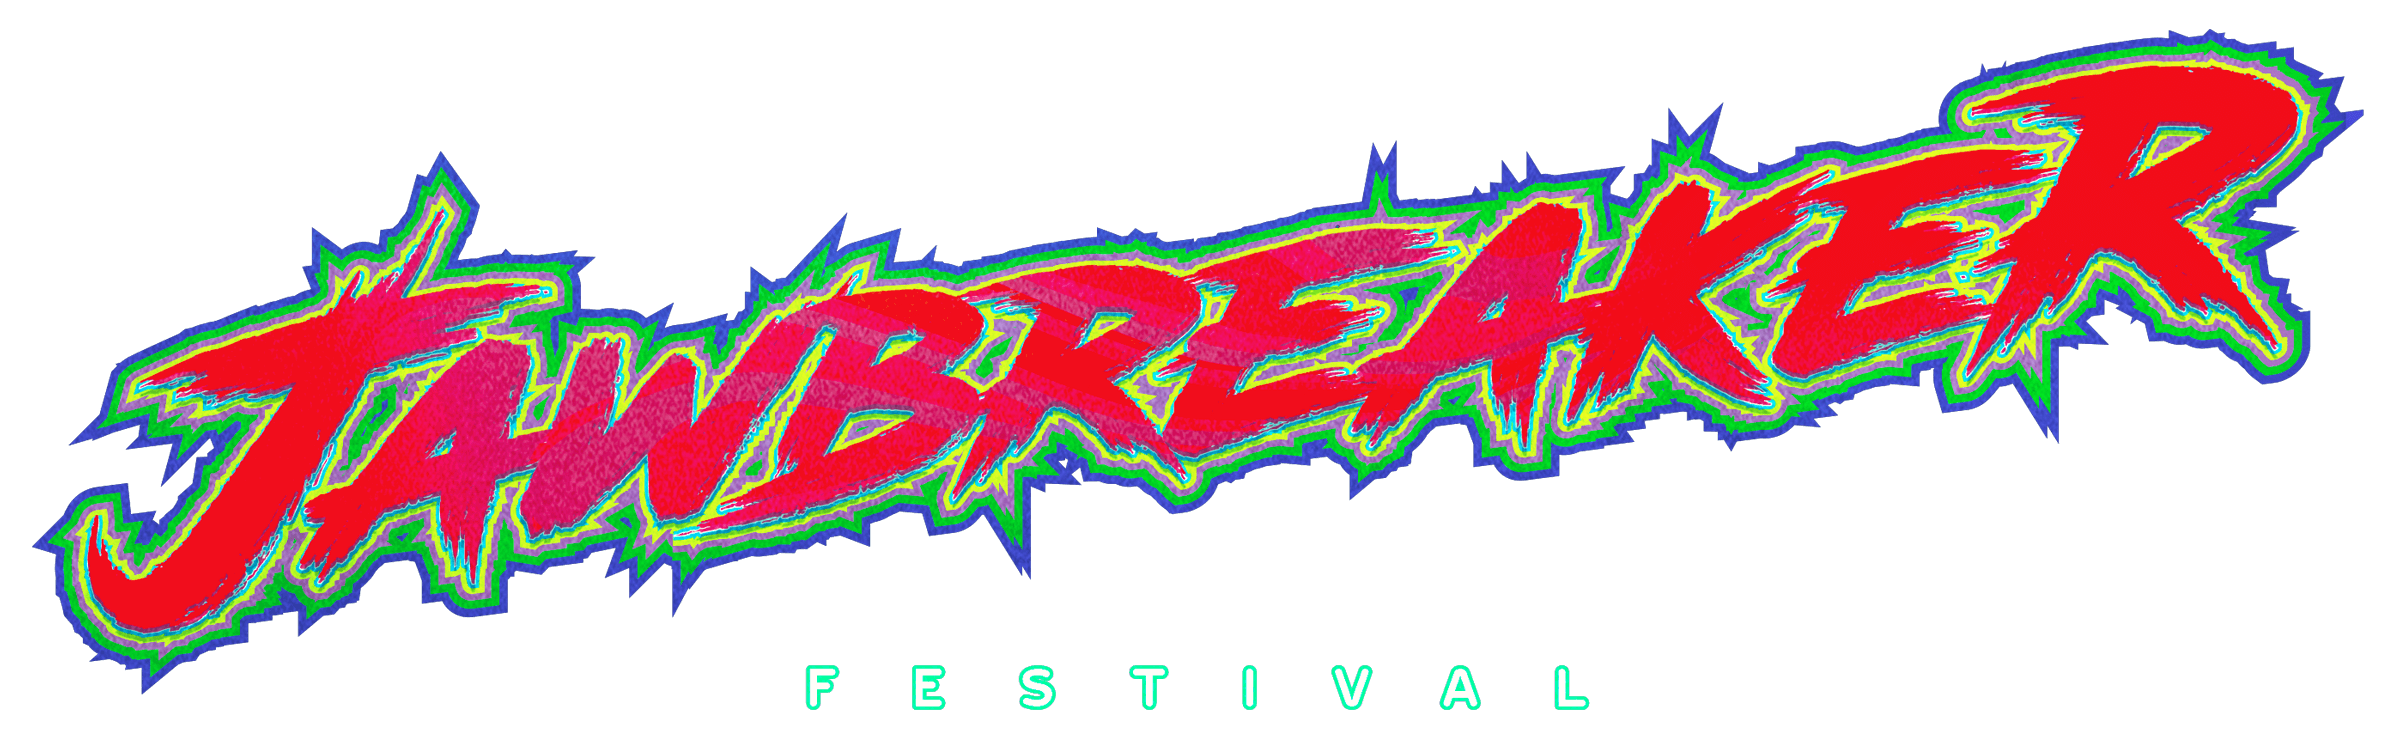 Jawbreaker Logo - Jawbreaker Festival - Jawbreaker Festival